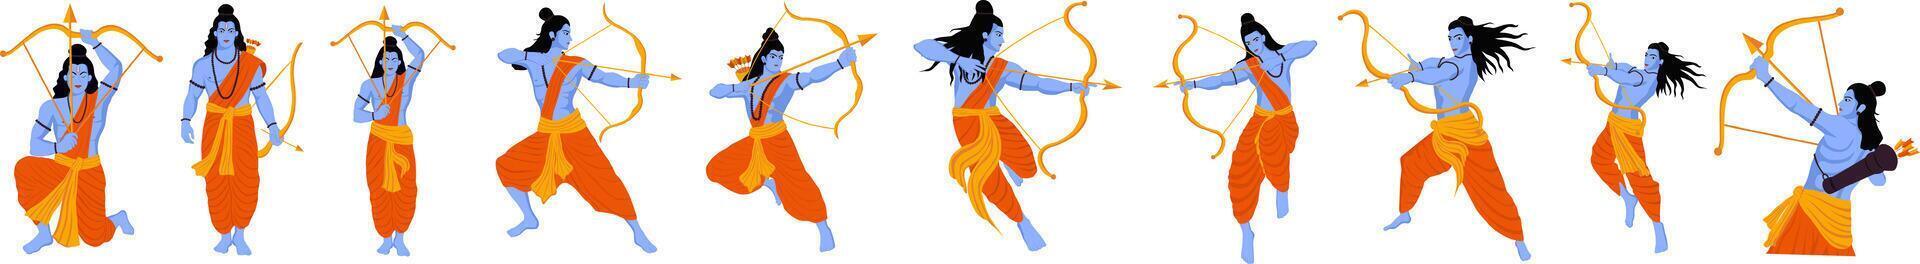 Happy Ram Navami Festival of India inlägg på sociala medier vektor